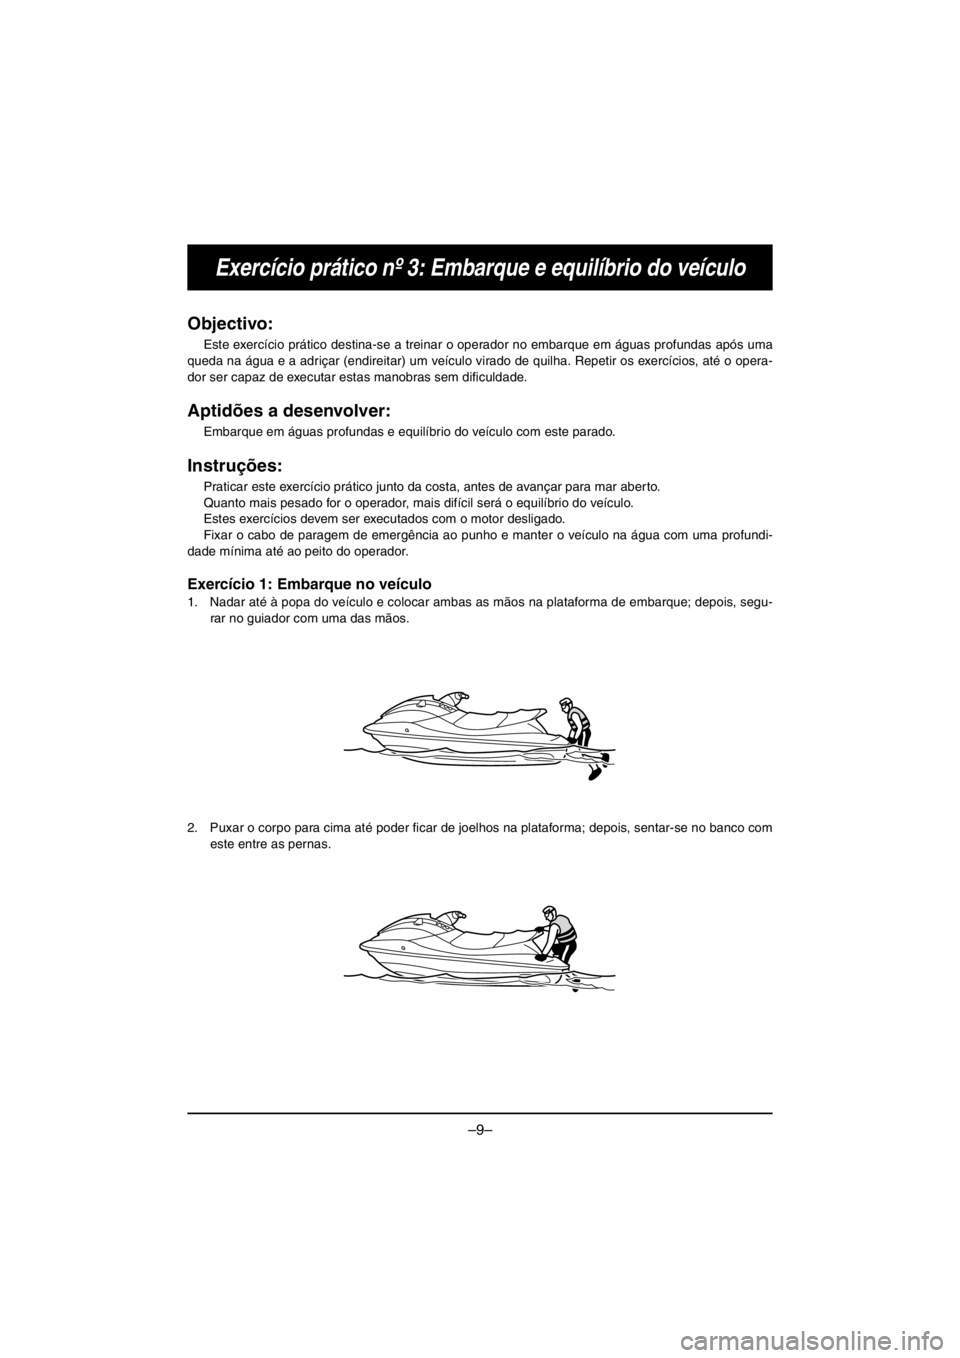 YAMAHA V1 2016  Notices Demploi (in French) –9–
Exercício prático nº 3: Embarque e equilíbrio do veículo
Objectivo: 
Este exercício prático destina-se a treinar o operador no embarque em águas profundas após uma
queda na água e a 